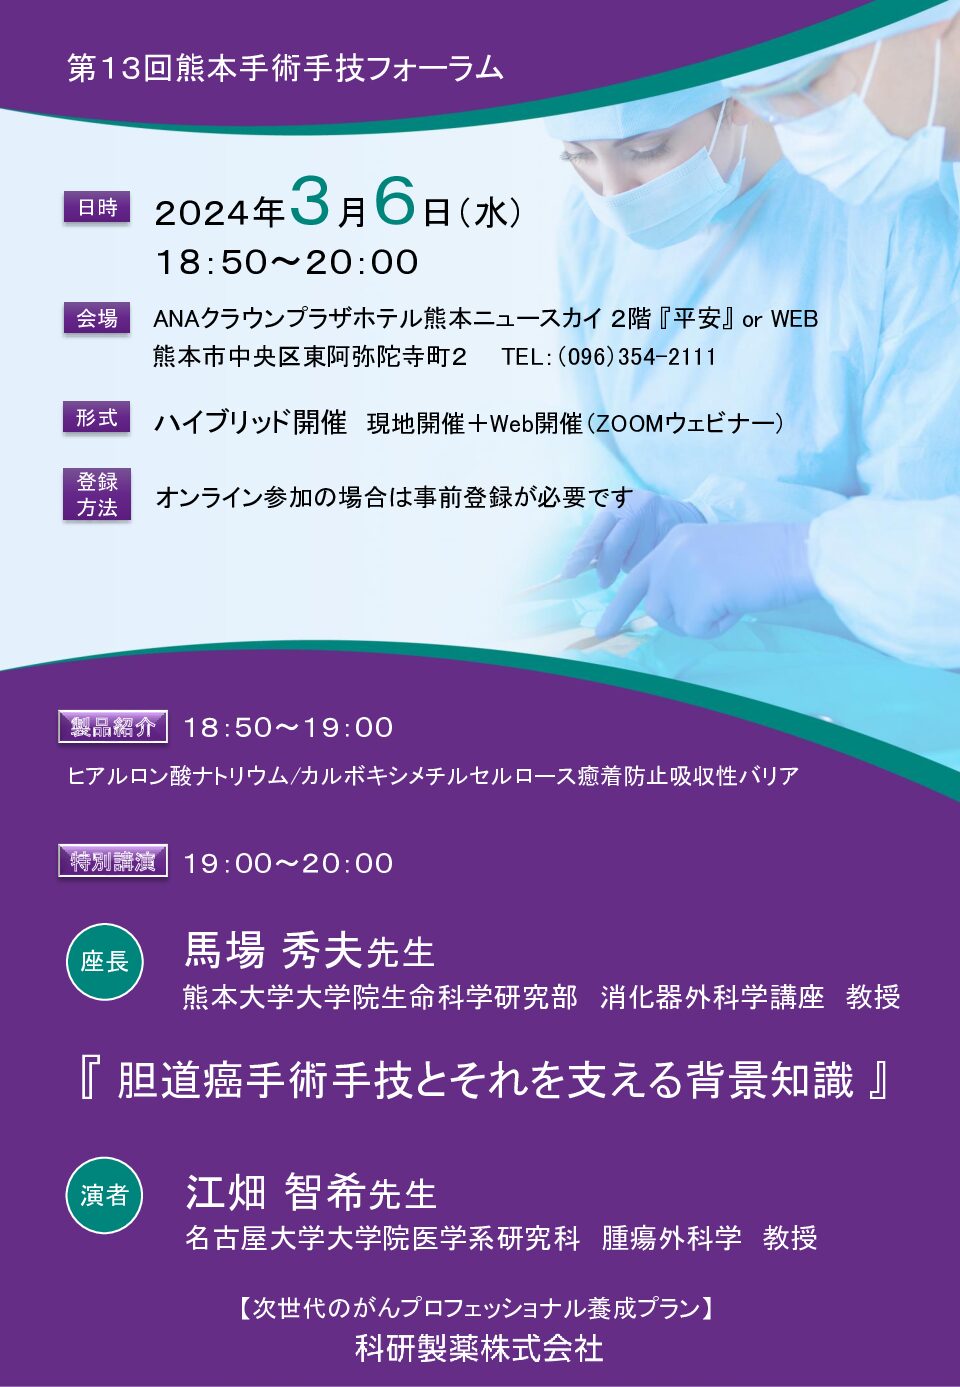 【熊本】第13回熊本手術手技フォーラム（3月6日開催）